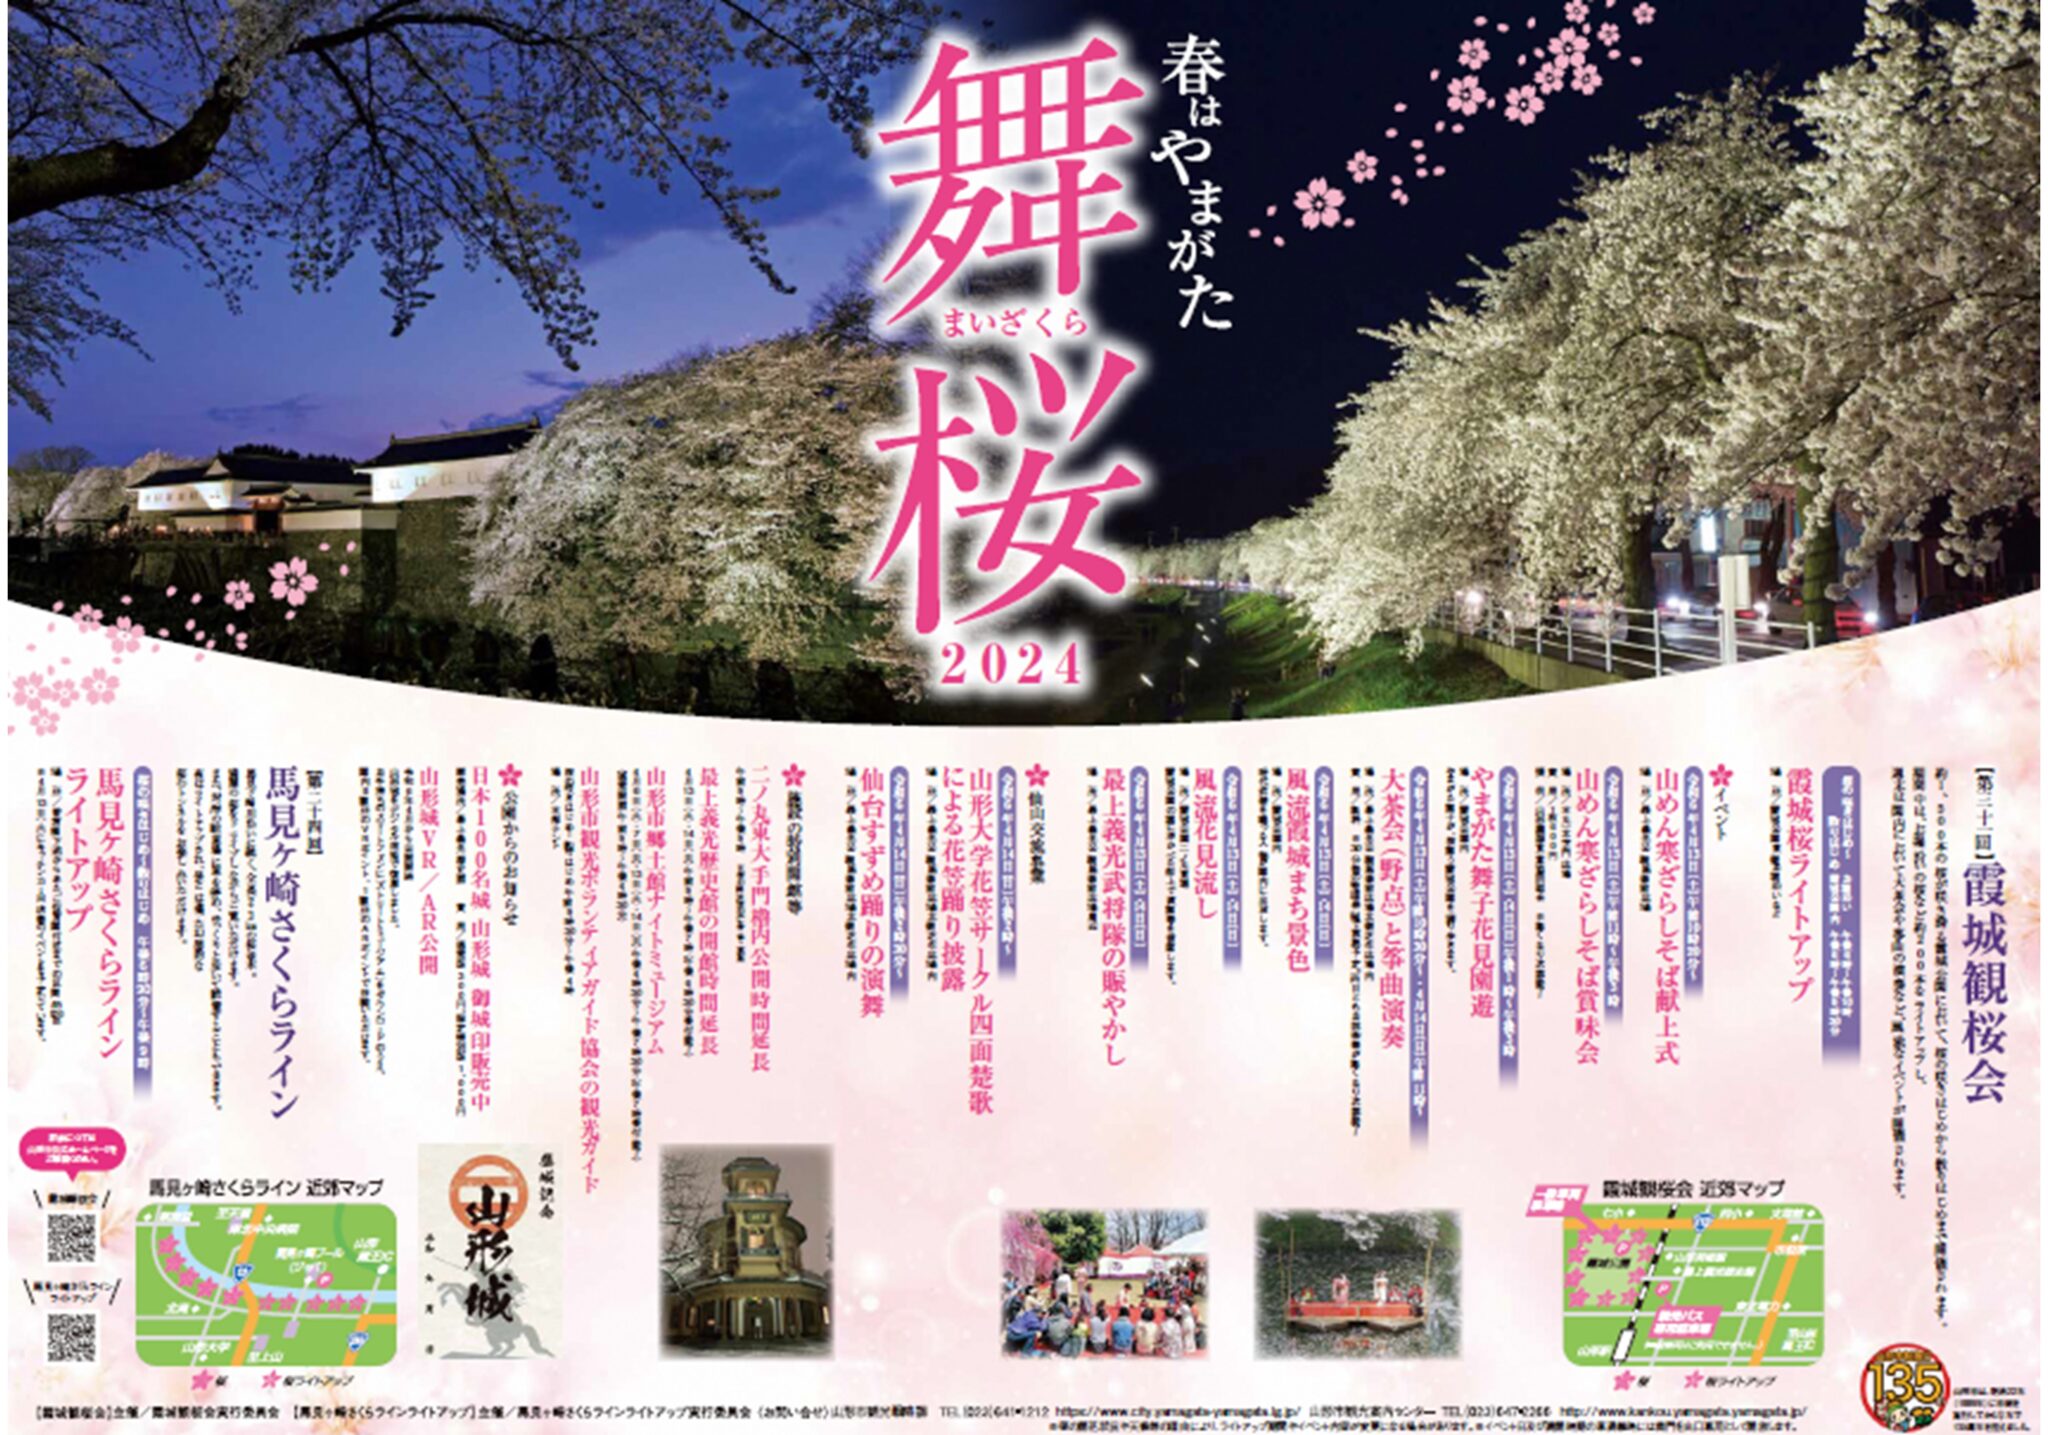 Kajo Park Cherry Blossom Event